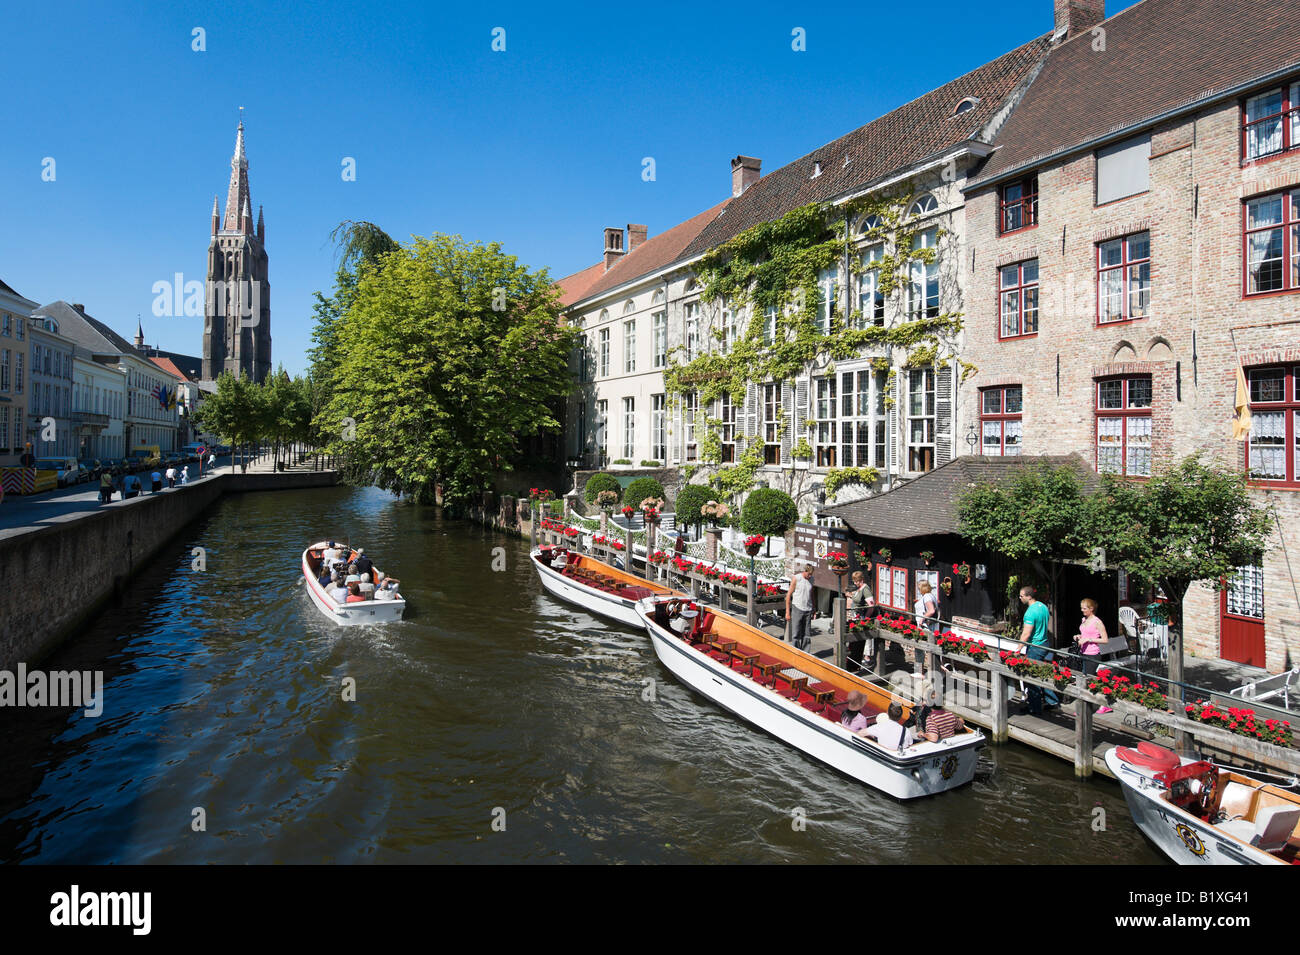 Voyage en bateau sur un canal dans le centre de la vieille ville avec Onze Lieve Vrouwekerk derrière, Bruges, Belgique Banque D'Images